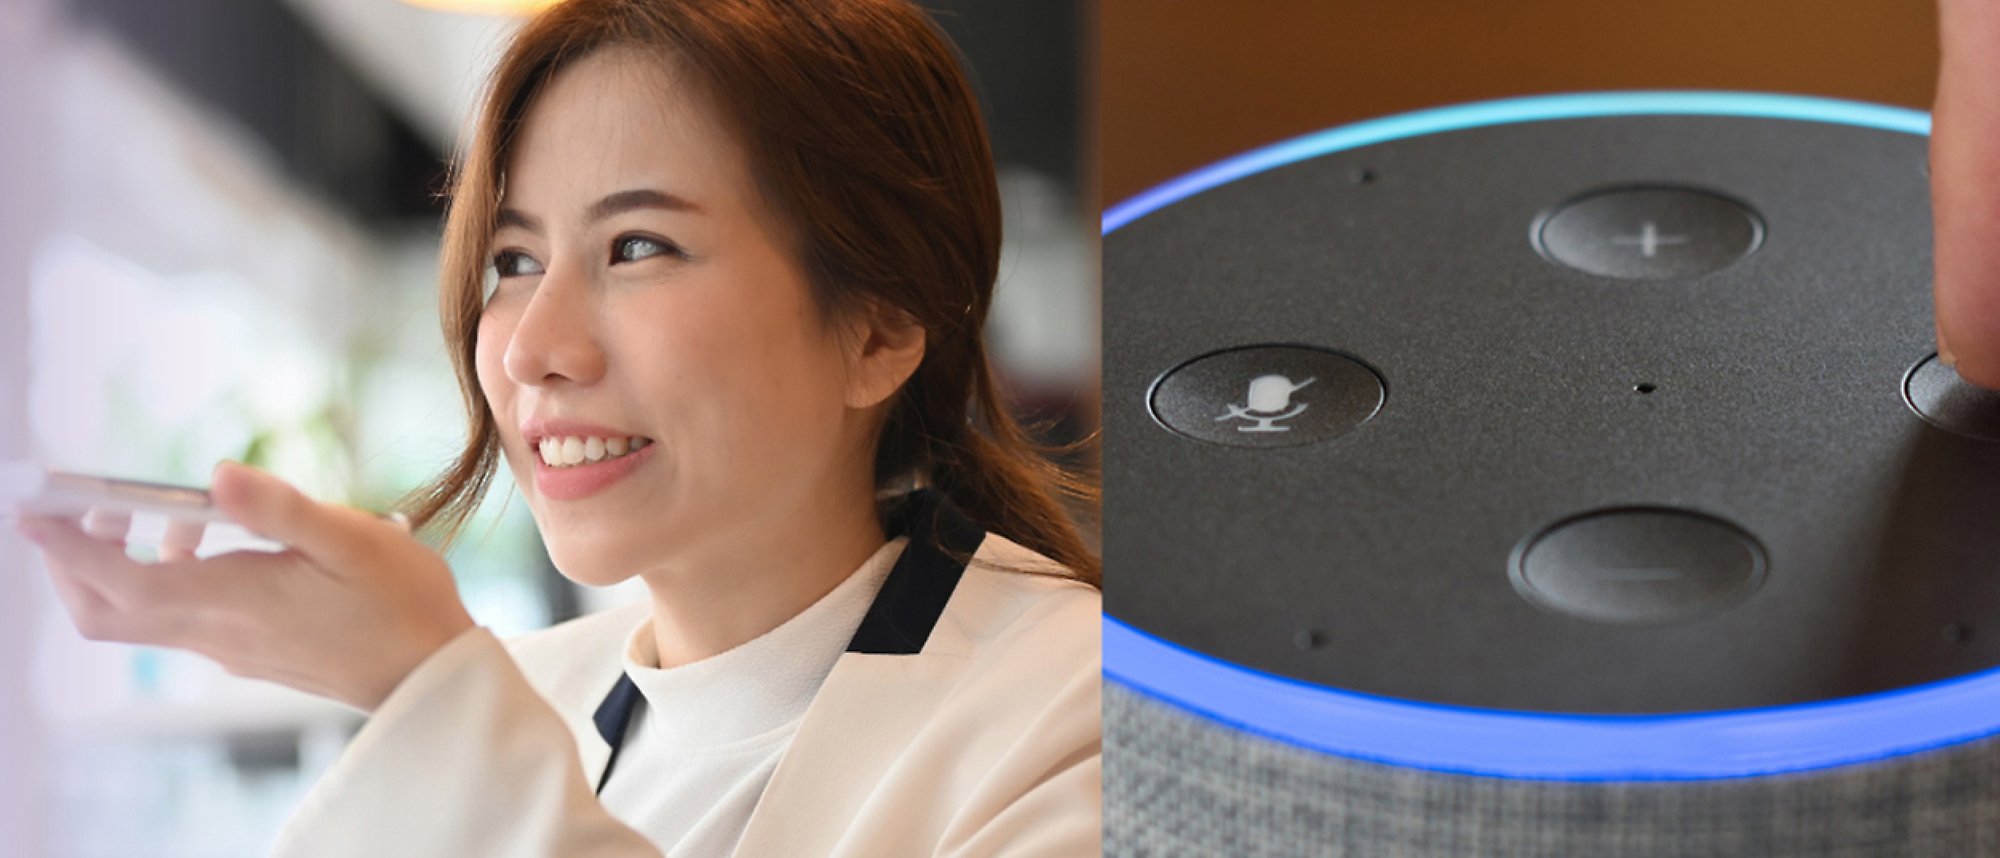 電話で話している女性と、青いライトとサウンド コントロールを備えた Amazon Alexa の画像